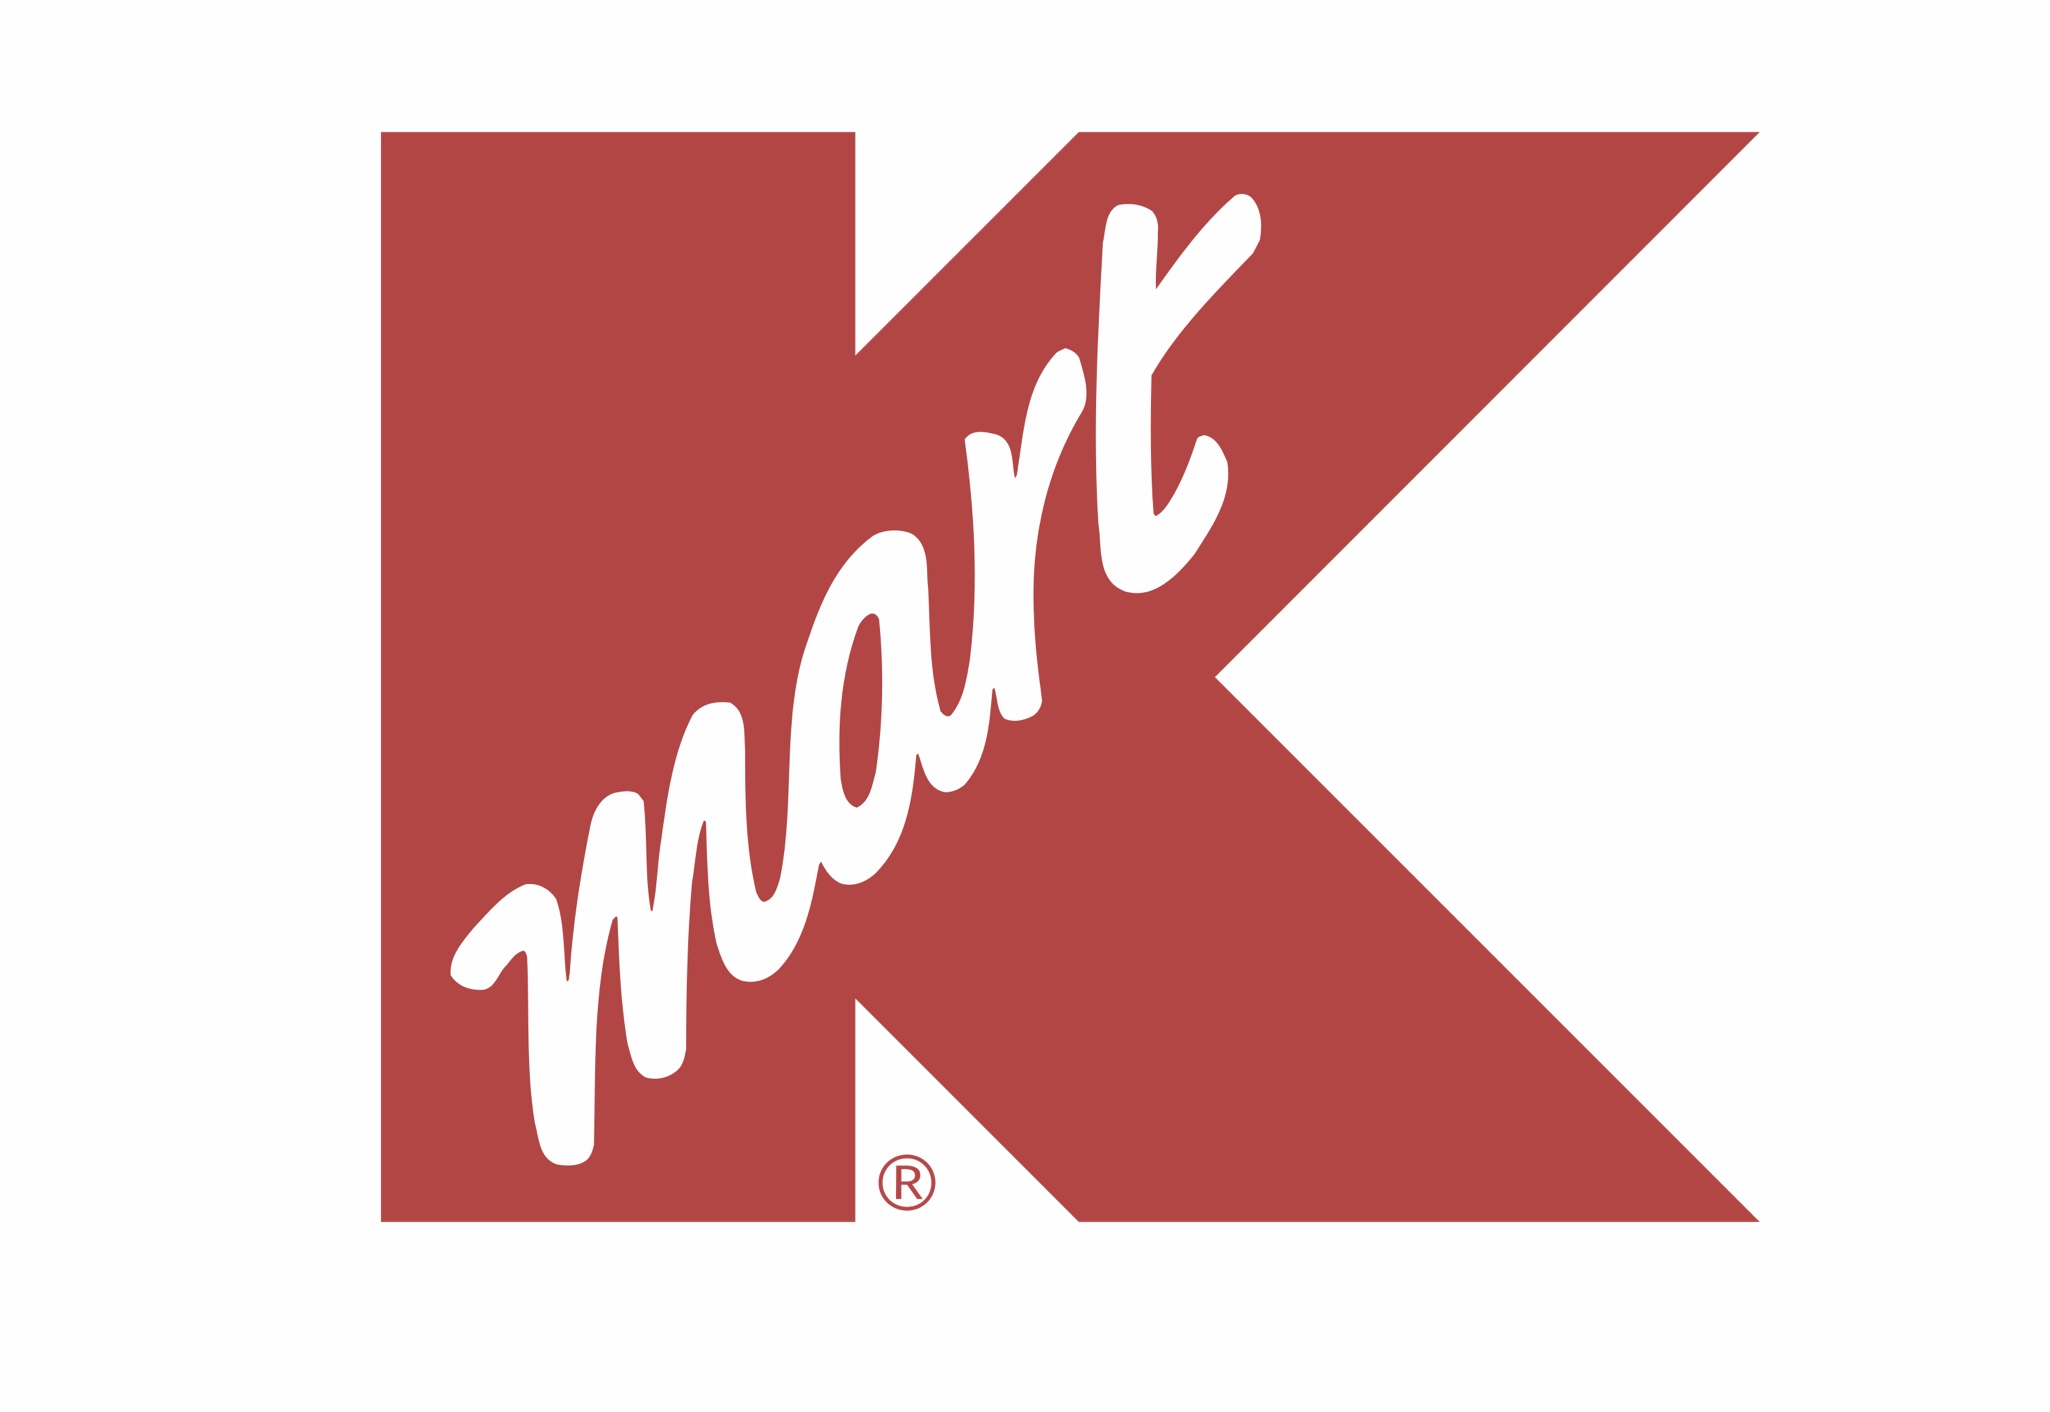 Kmart 1990s logo.jpg